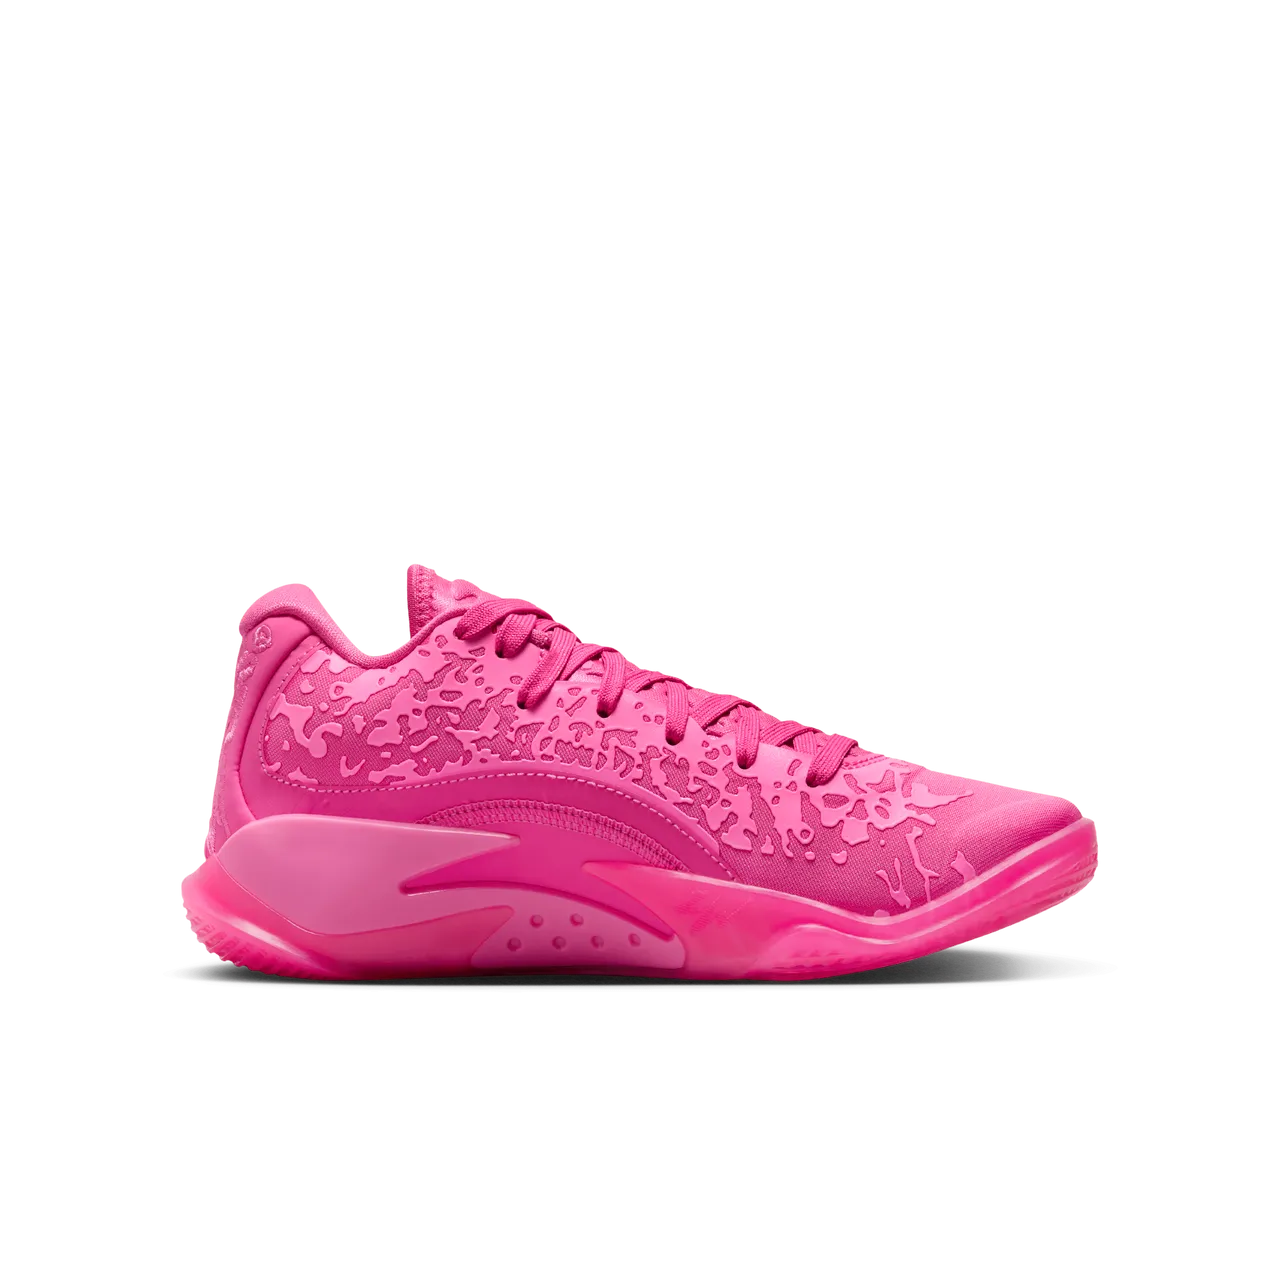 Zion 3 Basketballschuh für ältere Kinder - Pink